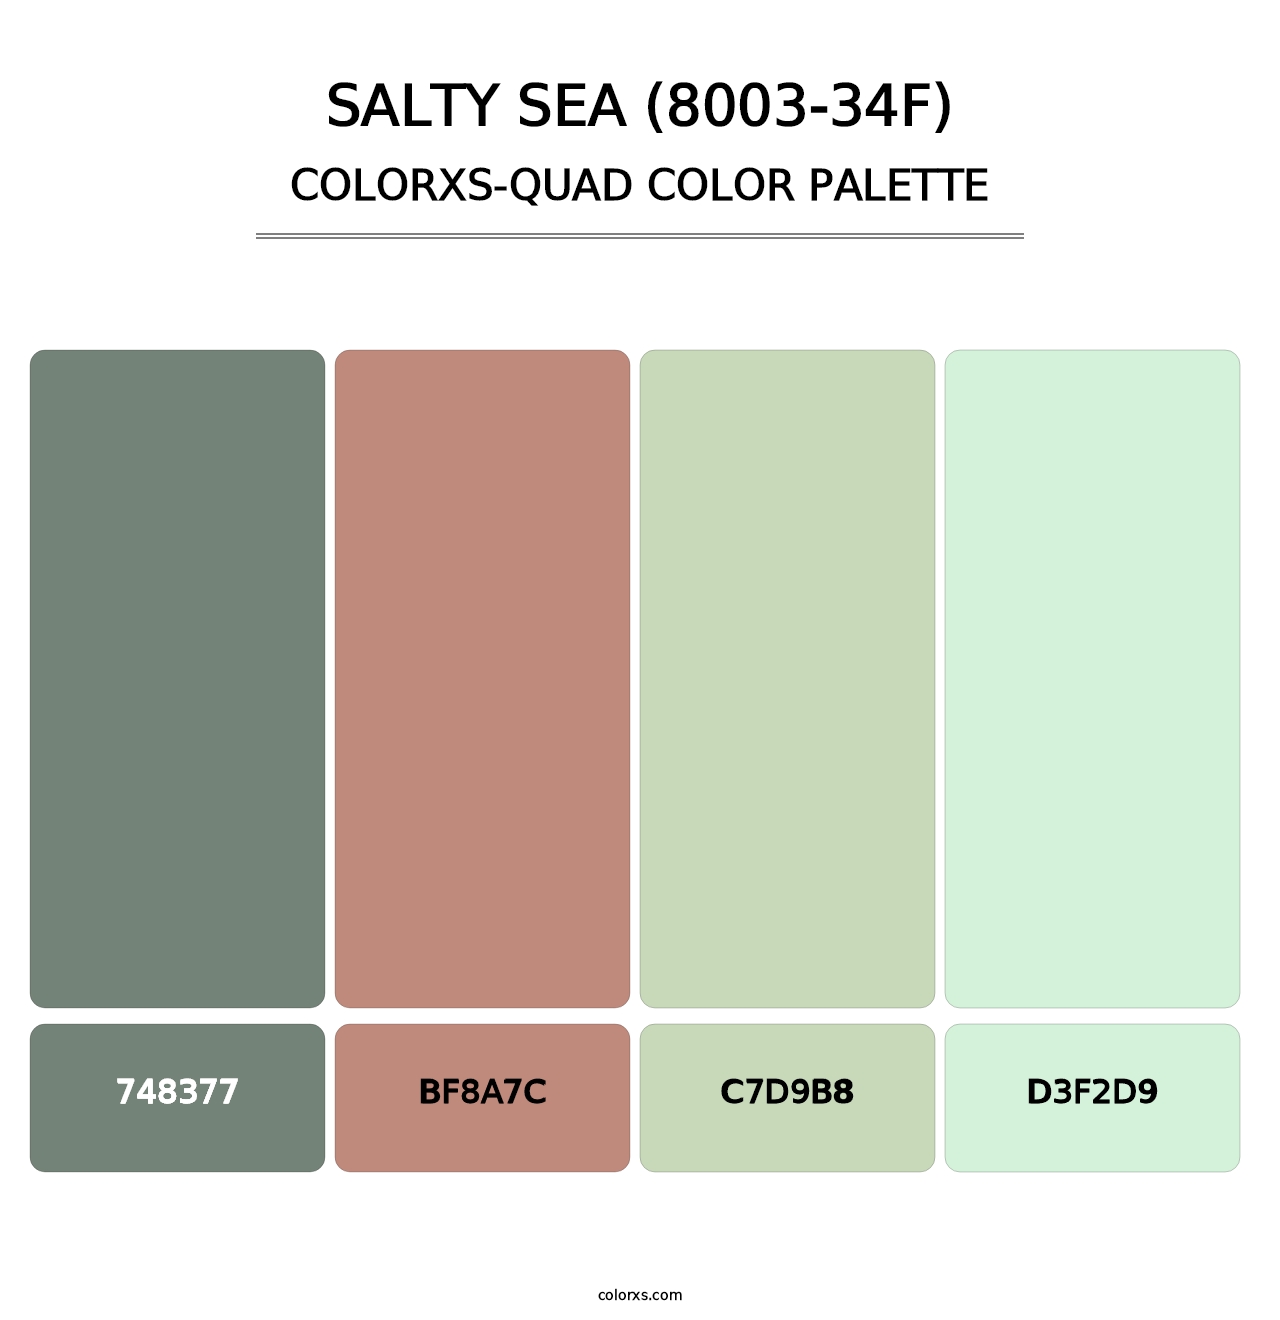 Salty Sea (8003-34F) - Colorxs Quad Palette